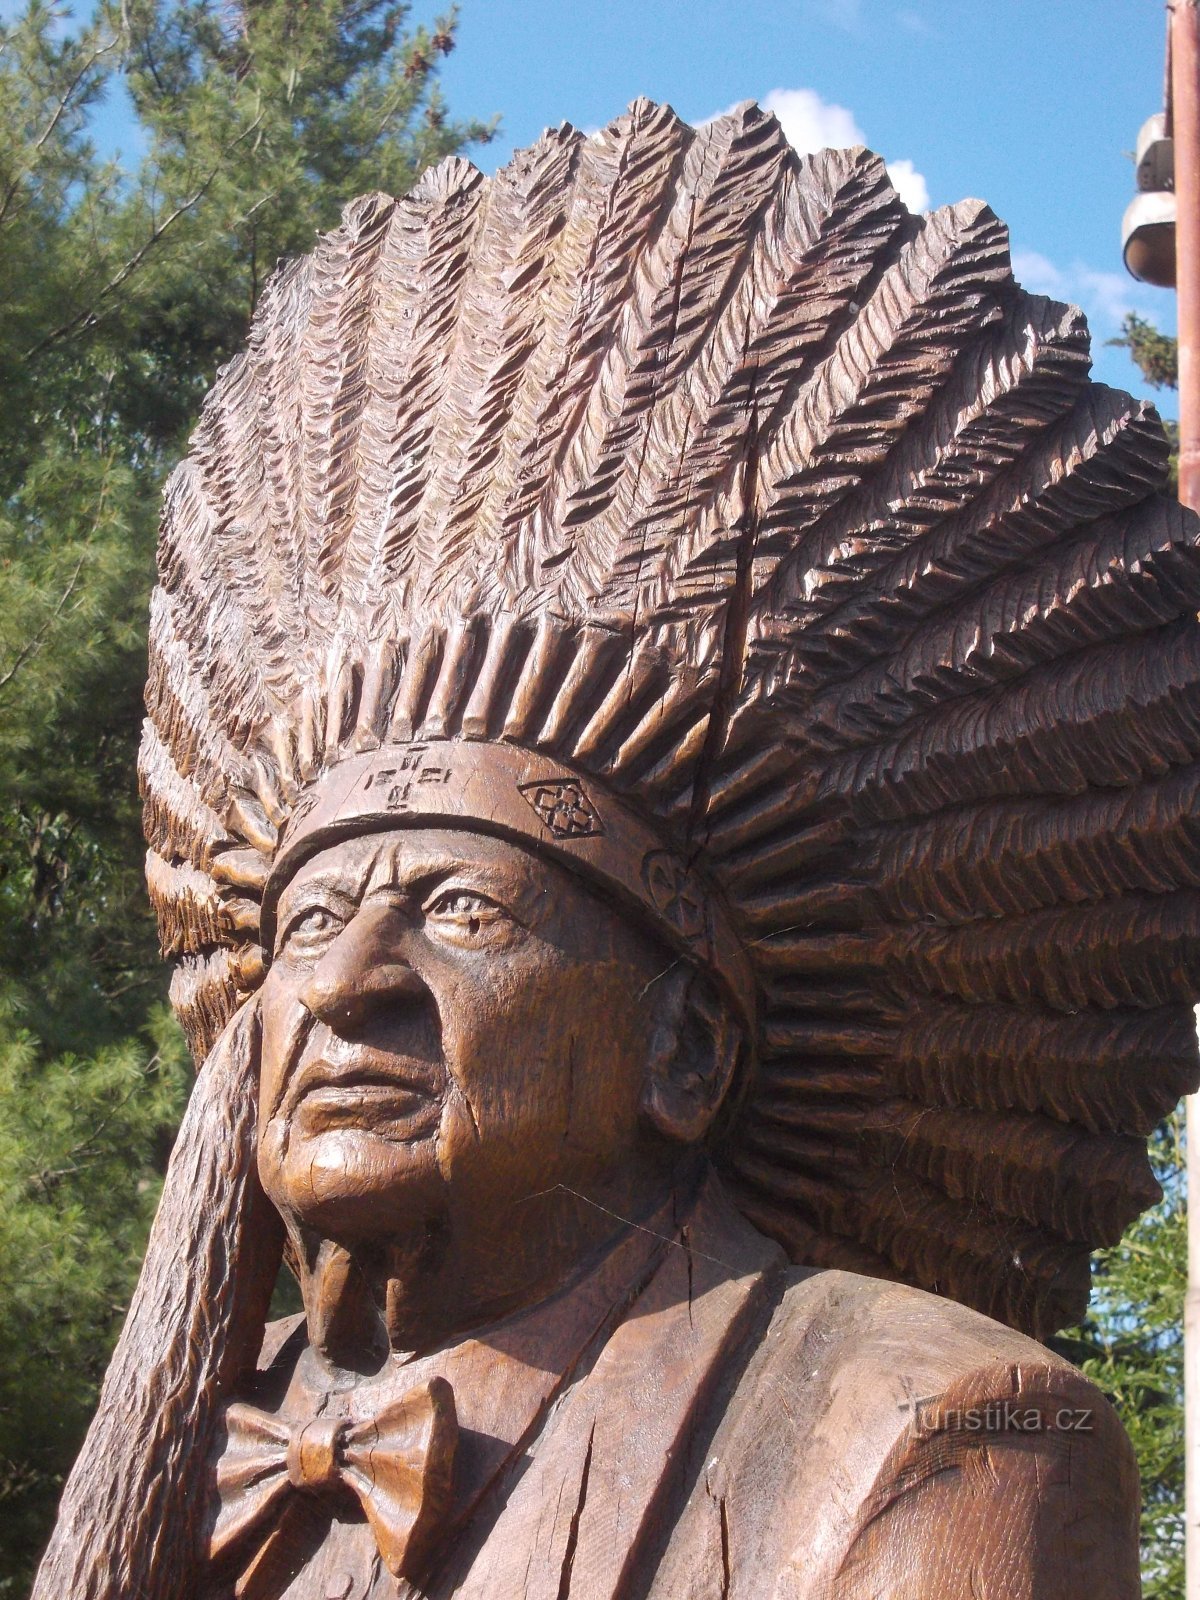 キカプーインディアン部族の名誉酋長の頭飾り付き